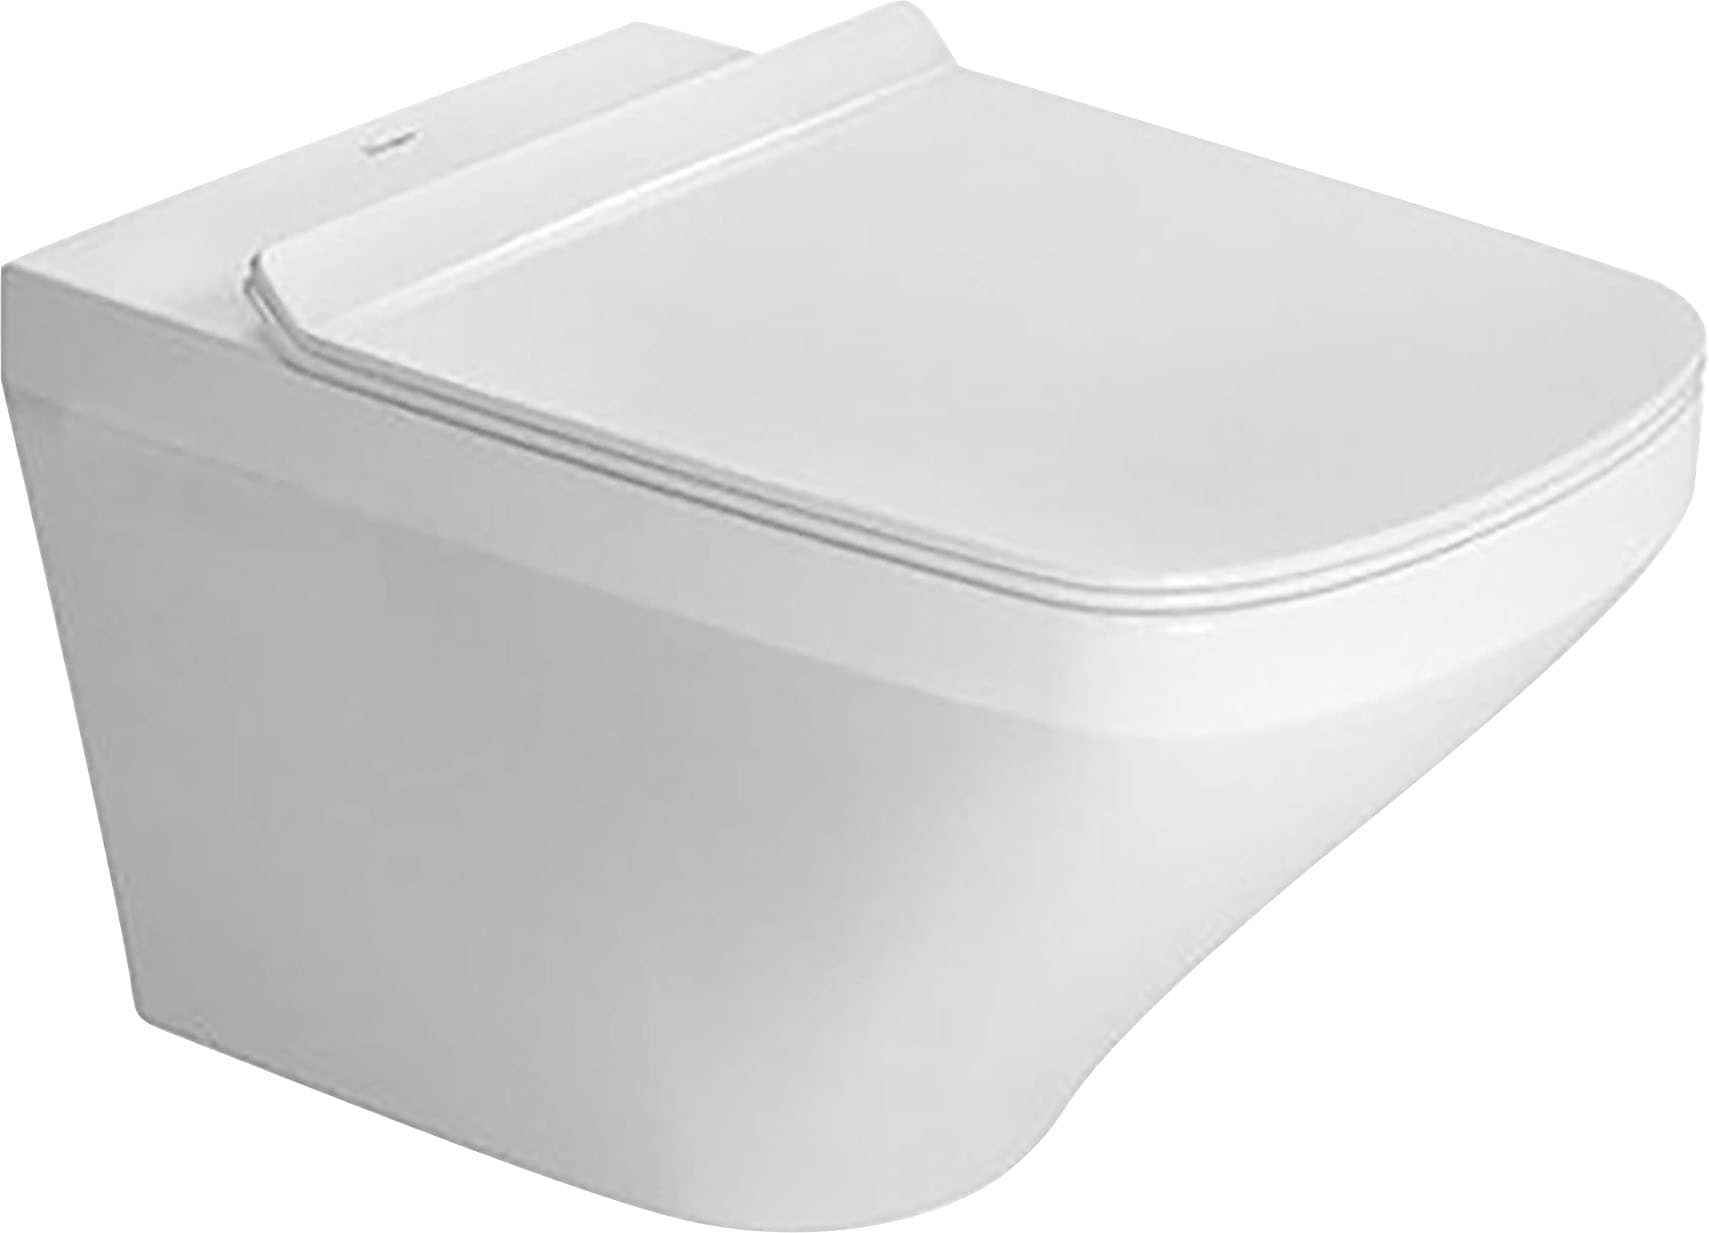 Duravit Tiefspül-WC »Durastyle«, online spülrandlos kaufen (Set), Wand-WC